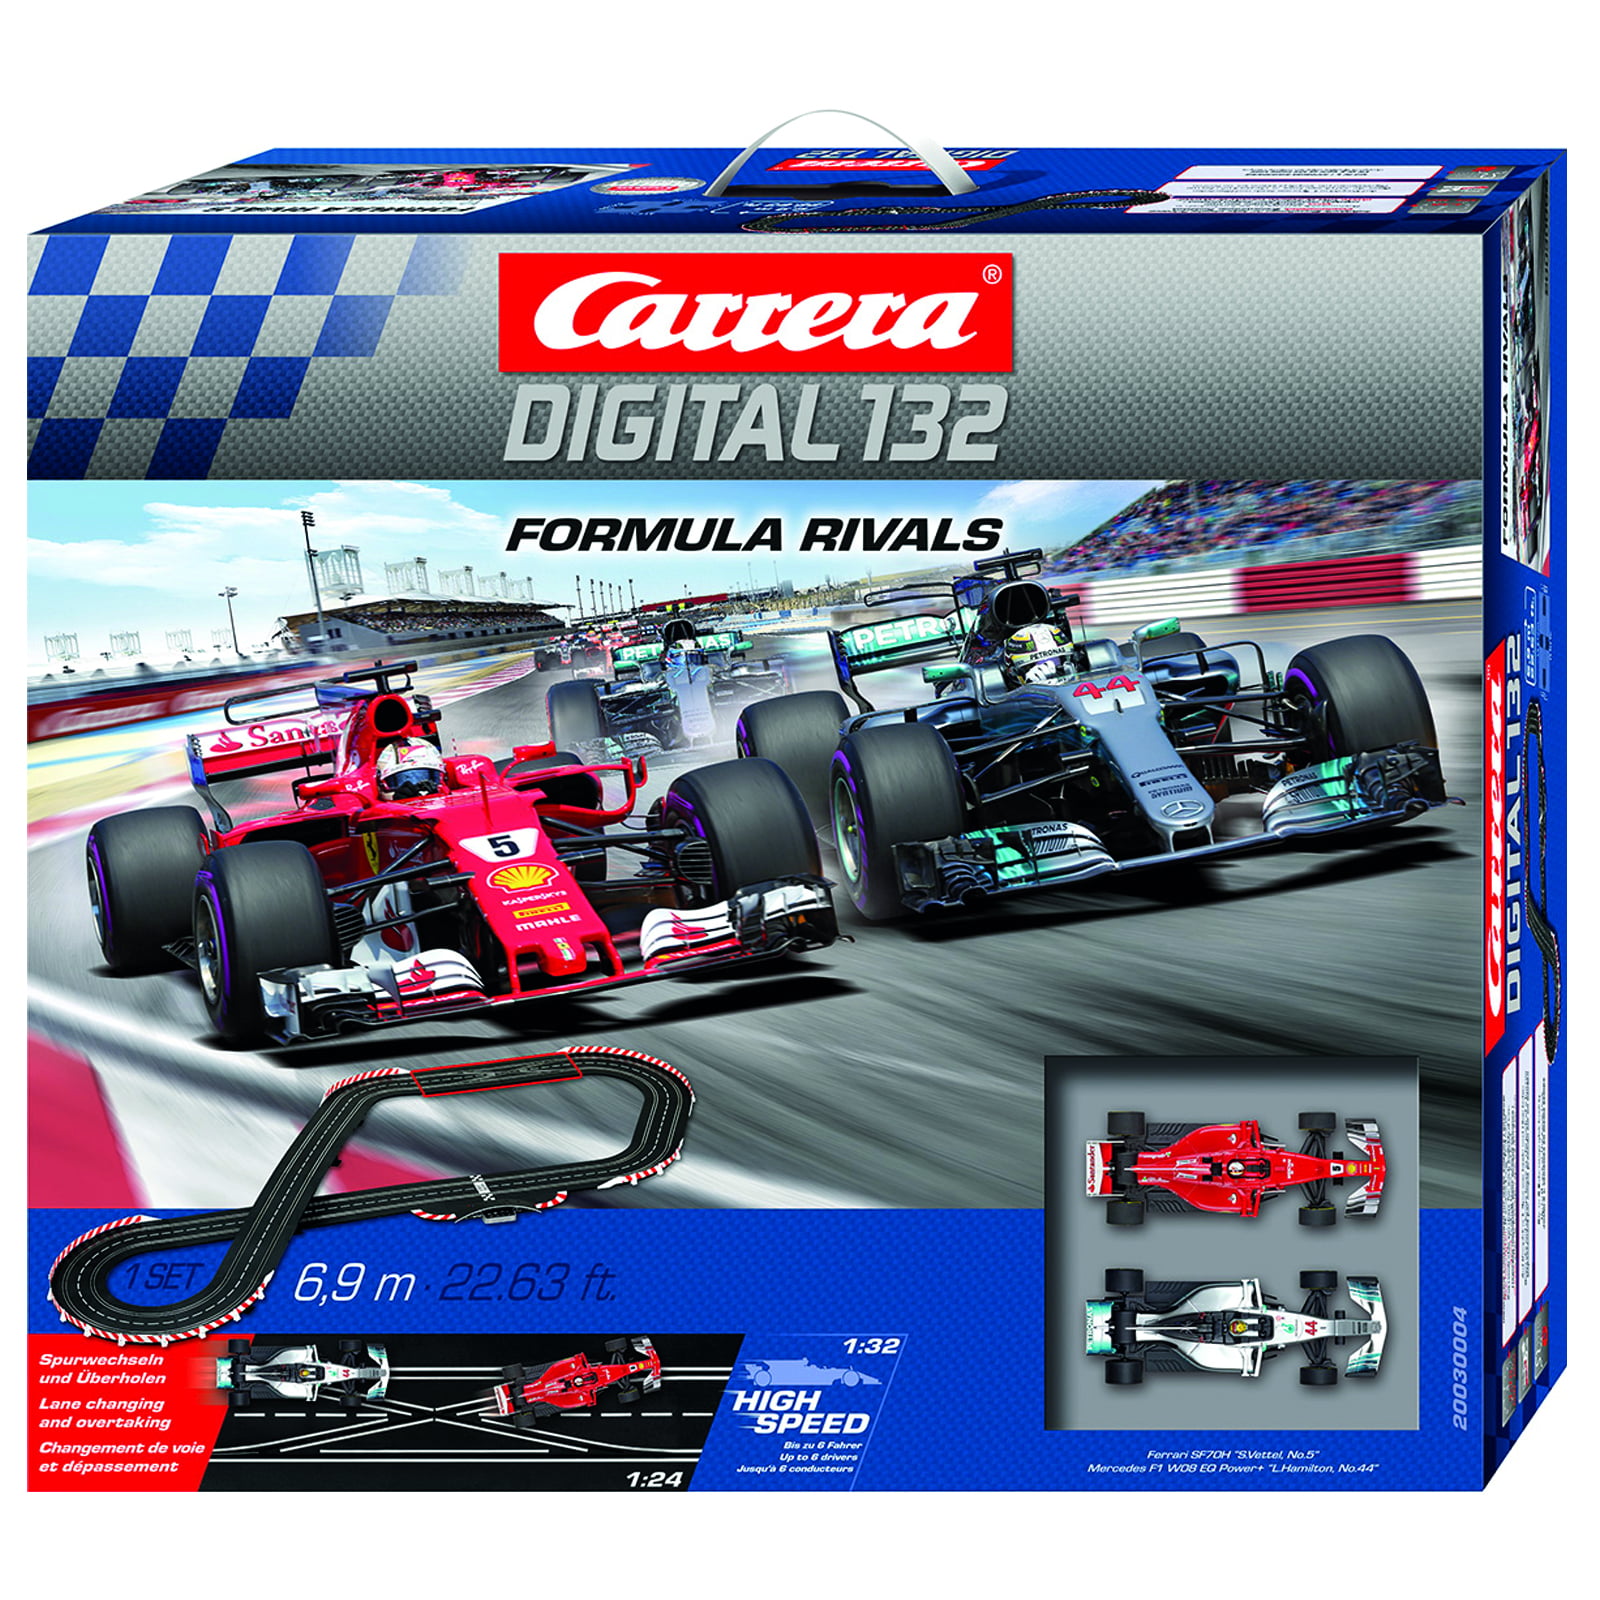 Carrera Digital 132 Formula Rivals 1:32 Scale Slot Car Race Set -  